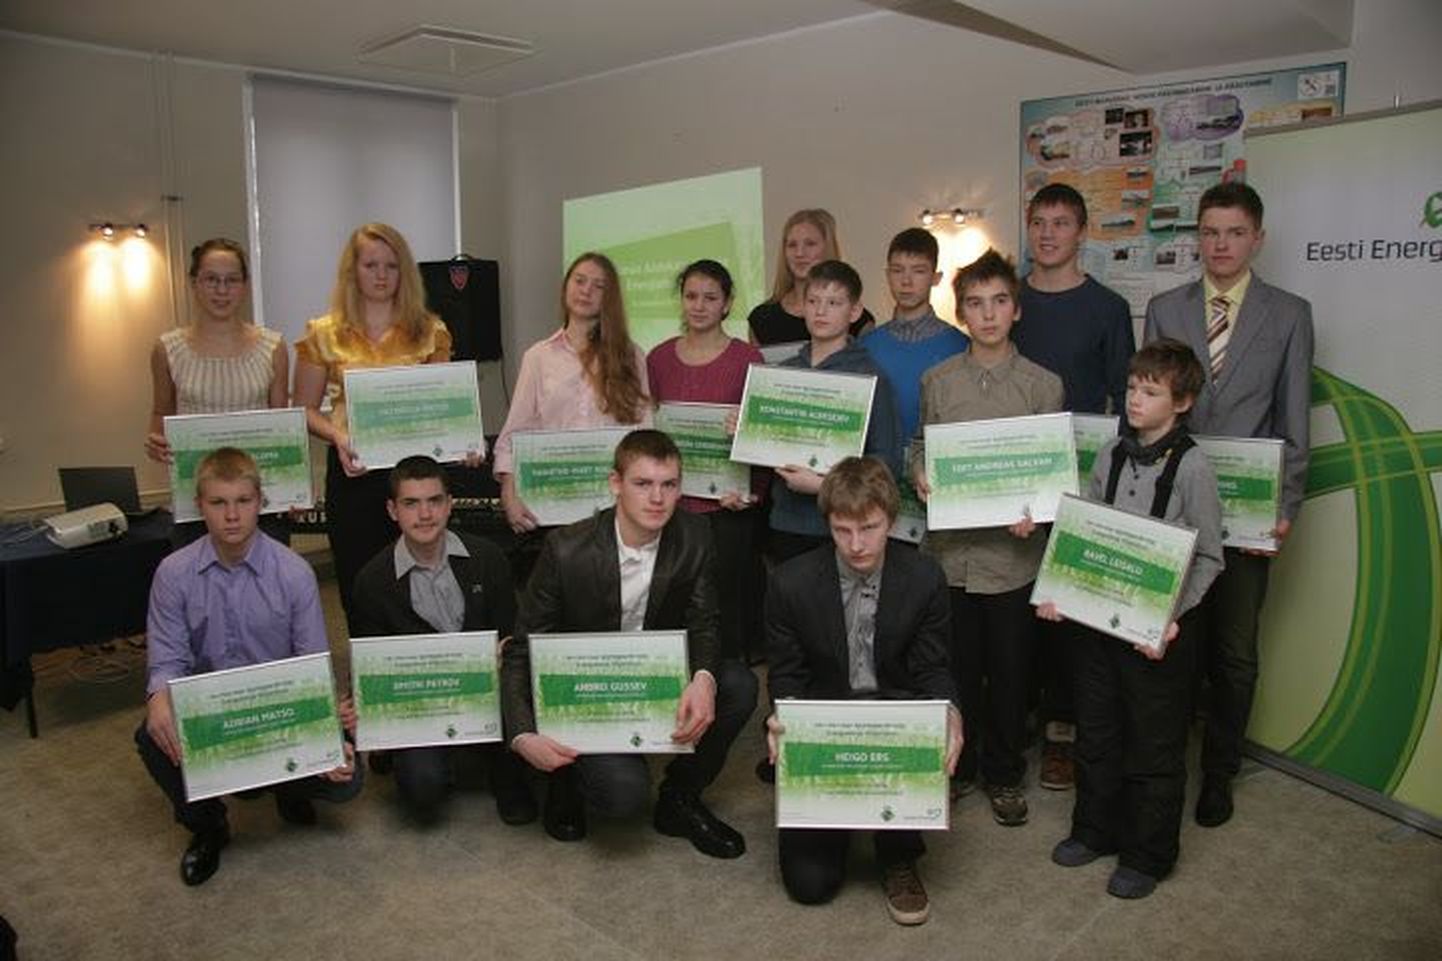 Предприятие Eesti Energia и Cоюз самоуправлений Ида-Вирумаа вручили 22 школьникам стипендии в общей сумме 6500 евро на развитие деятельности по интересам.